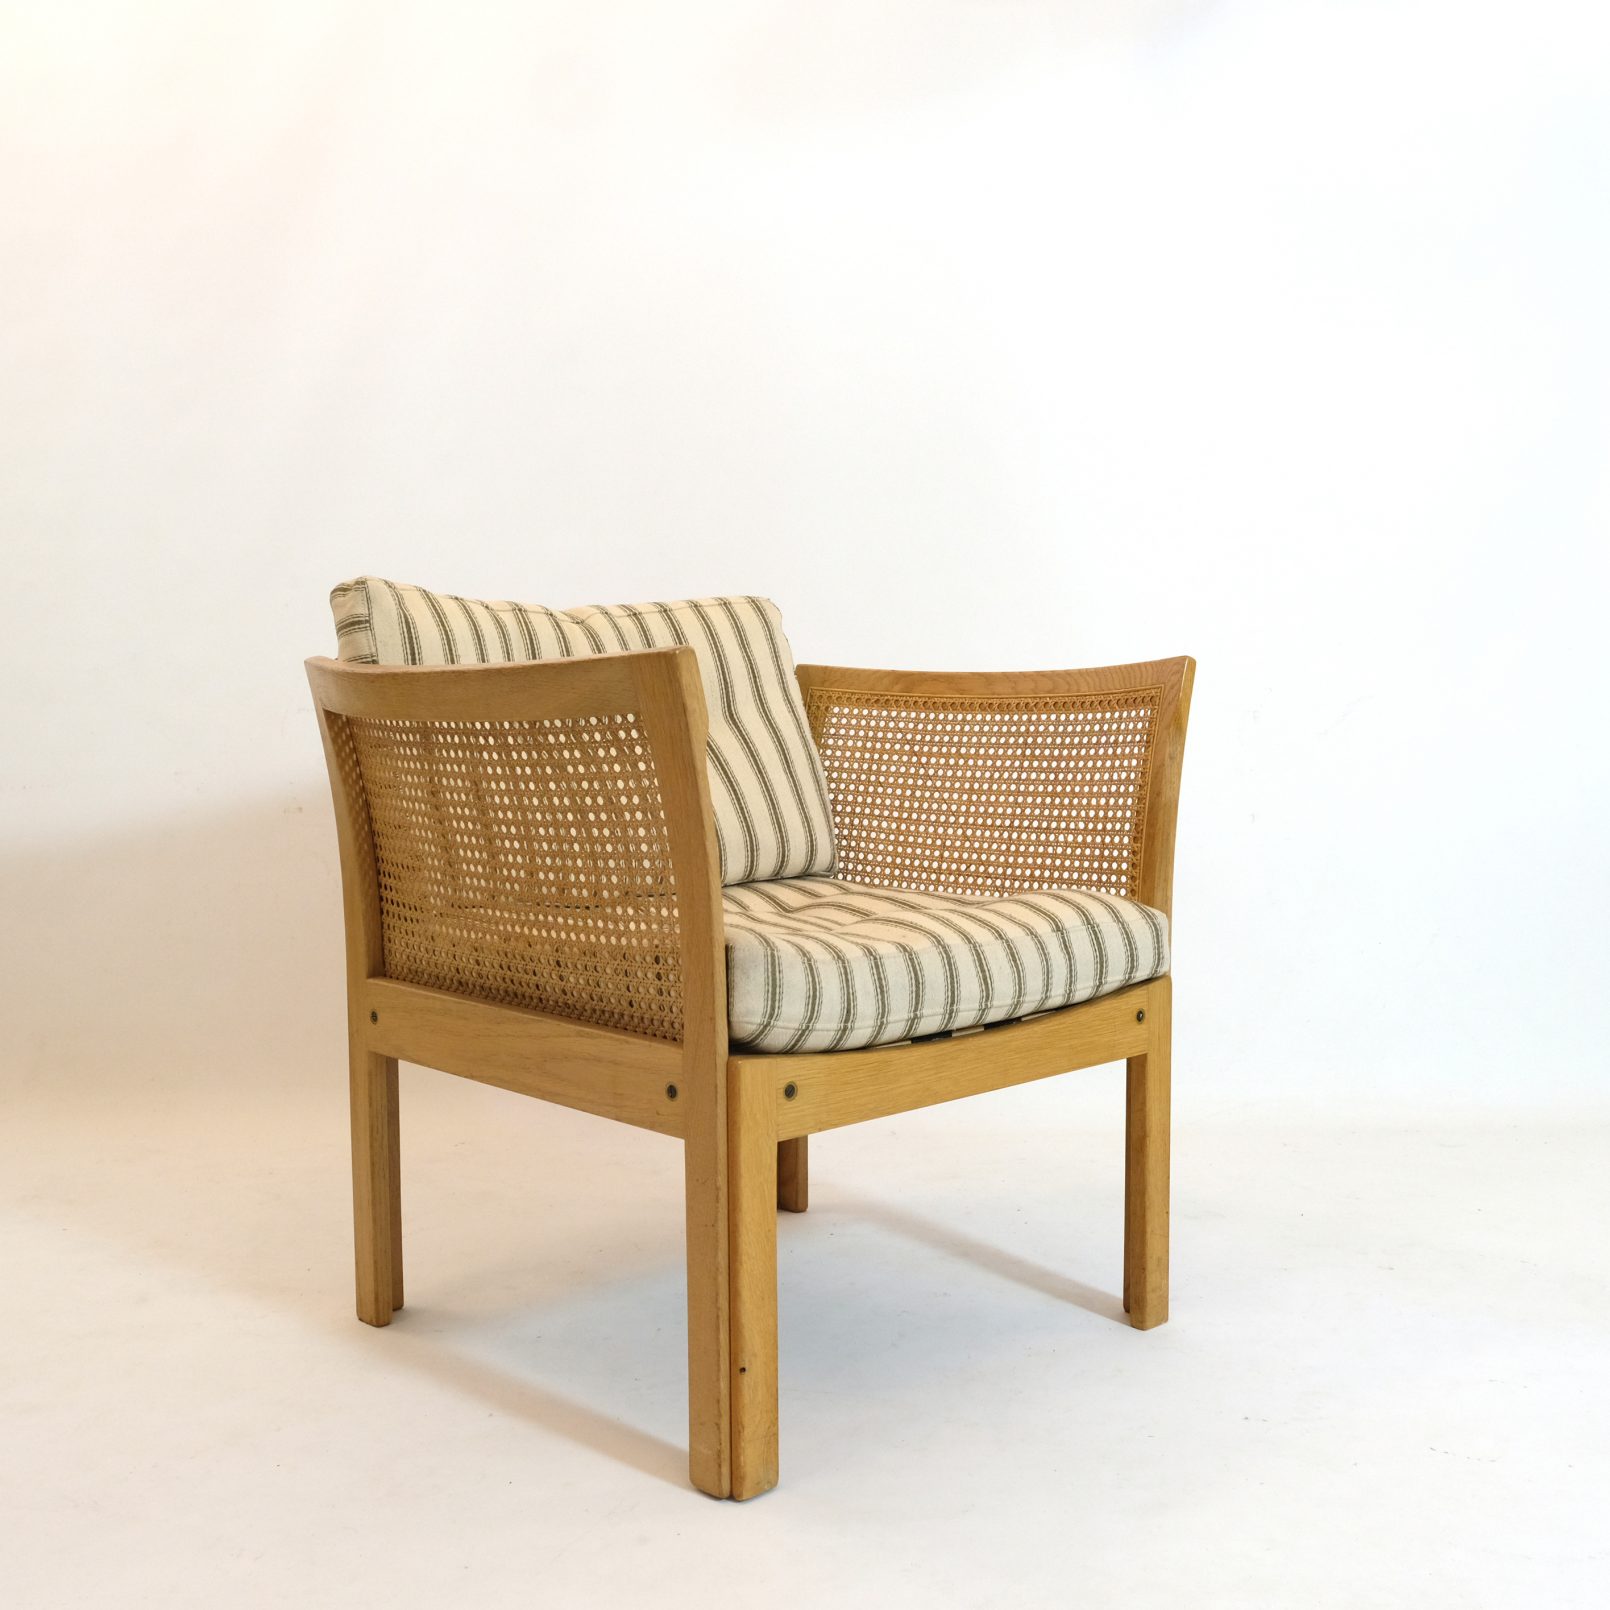 Illum Wikkelsø, Plexus armchair, 1970s, 5 available.